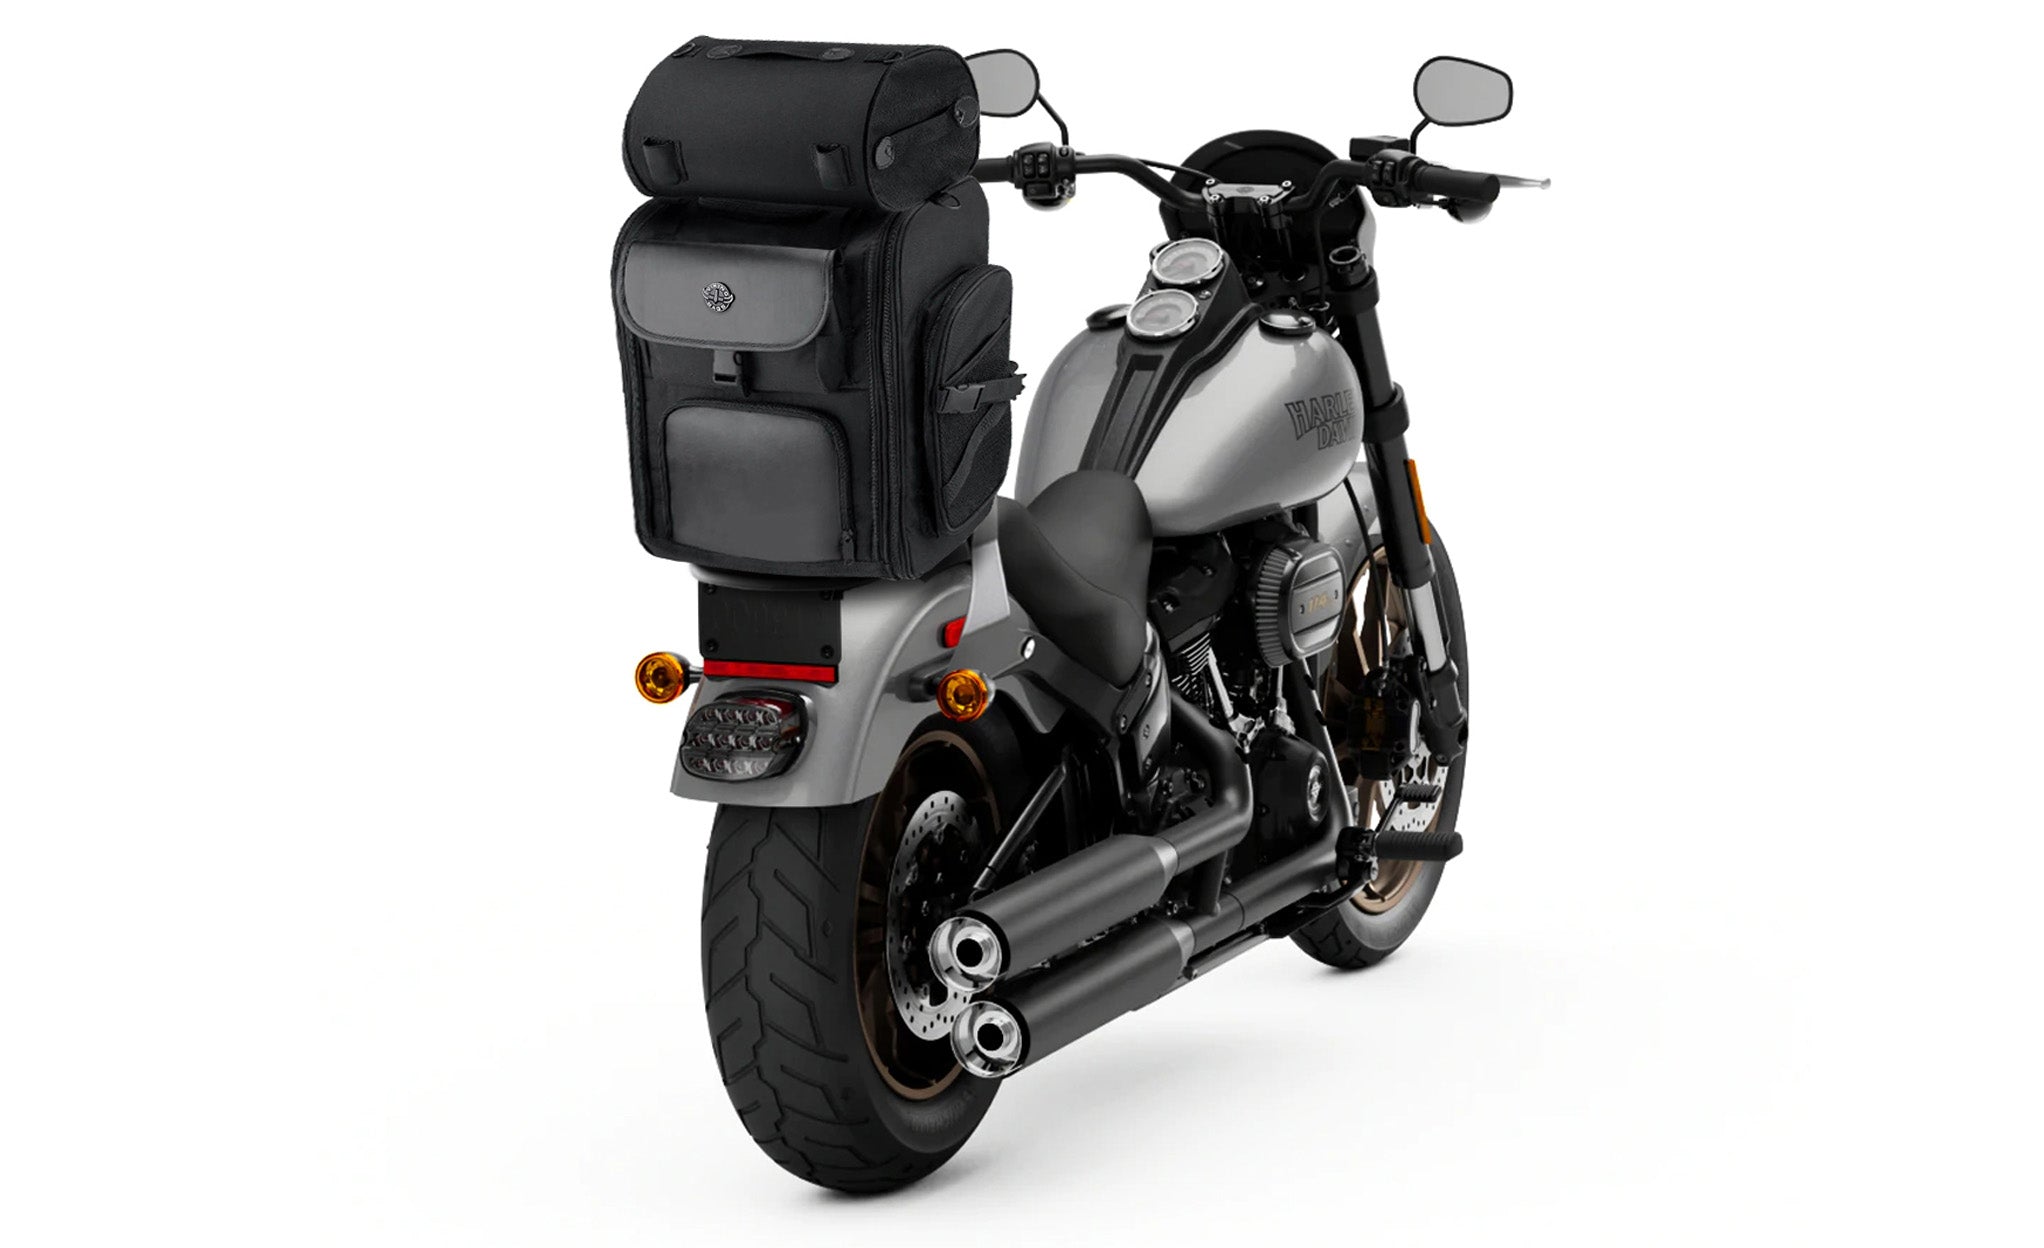 Viking Dwarf Medium Suzuki Motorcycle Sissy Bar Bag Bag on Bike View @expand